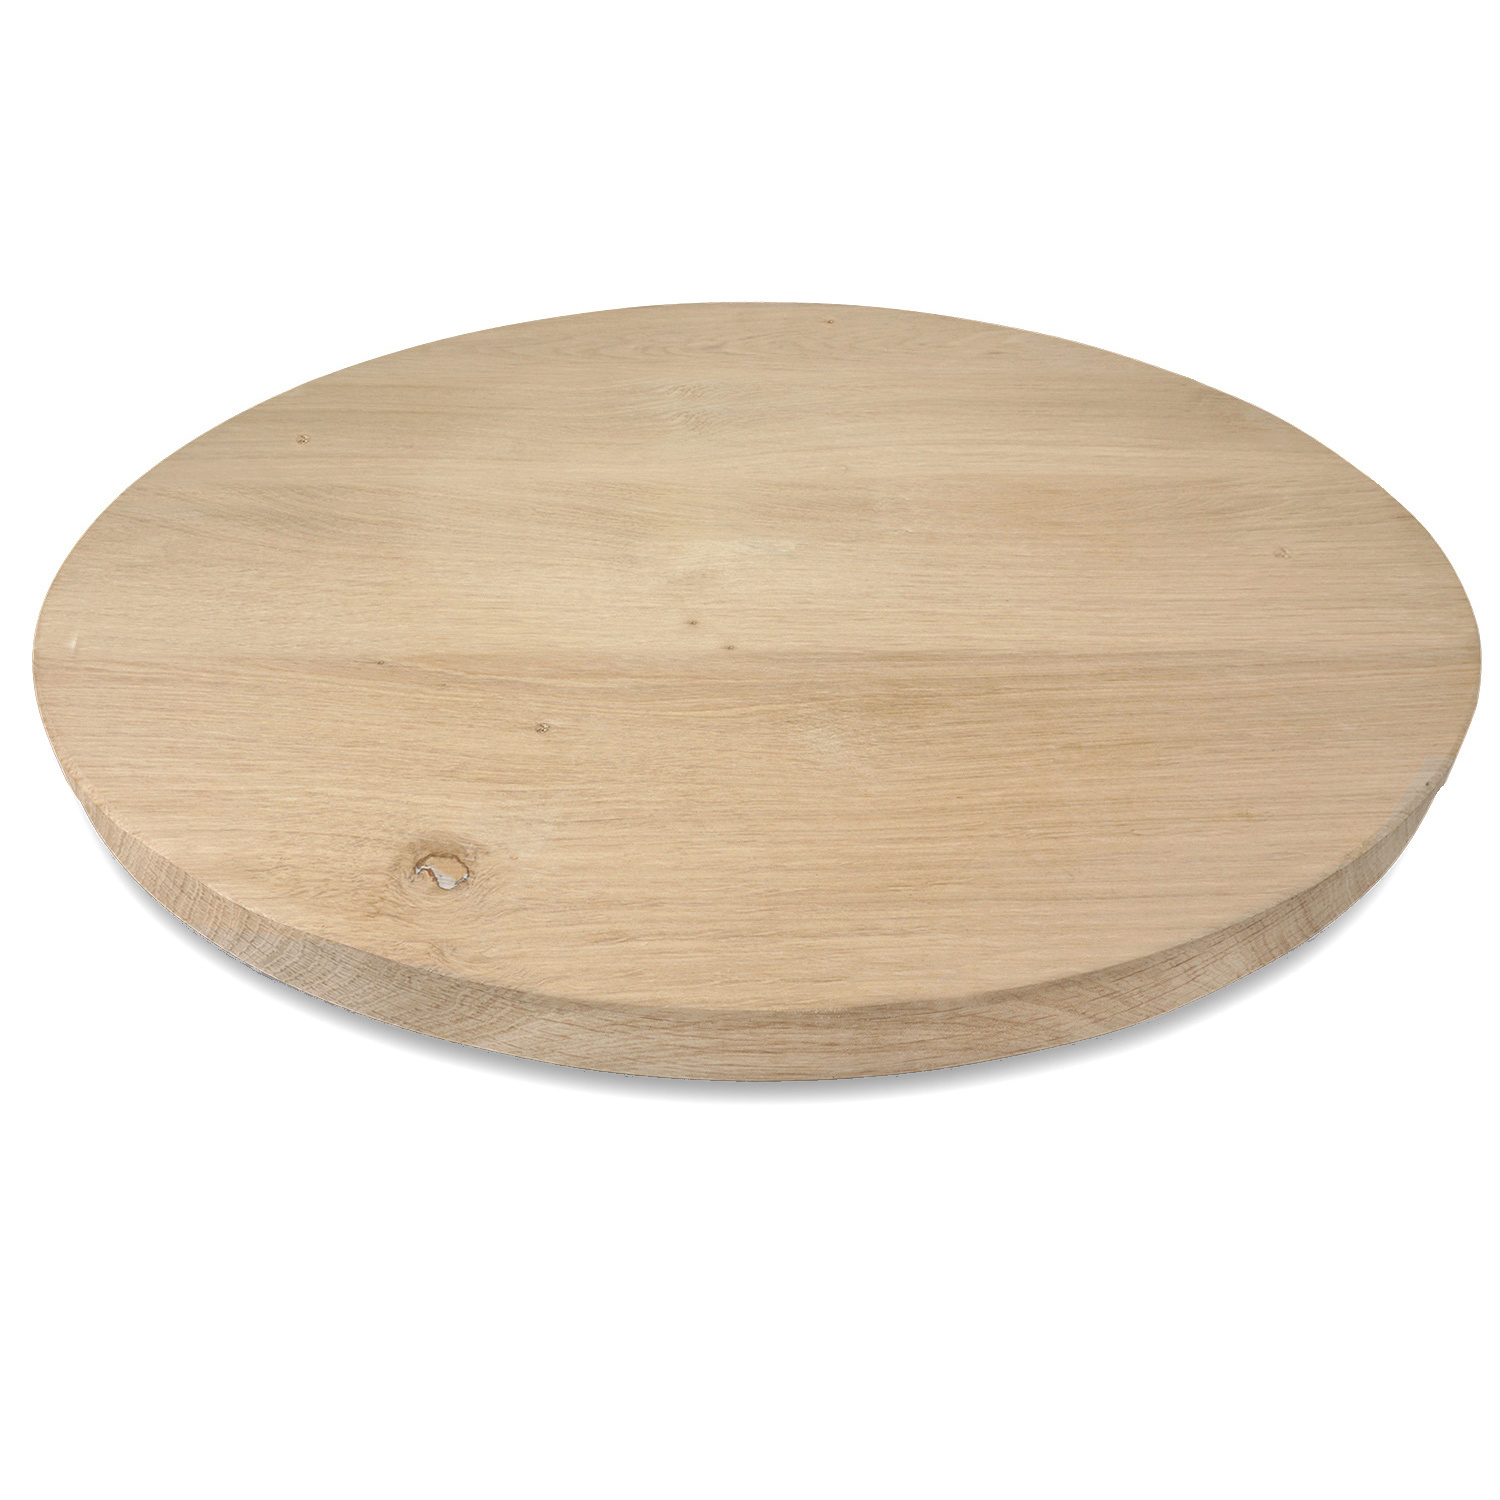  Tischplatte Eiche rund - 2,7 cm dick (1-Schicht) - Breite Lamellen (10 - 12 cm breit) - Eichenholz rustikal - verleimt & künstlich getrocknet (HF 8-12%) - verschiedene Größen